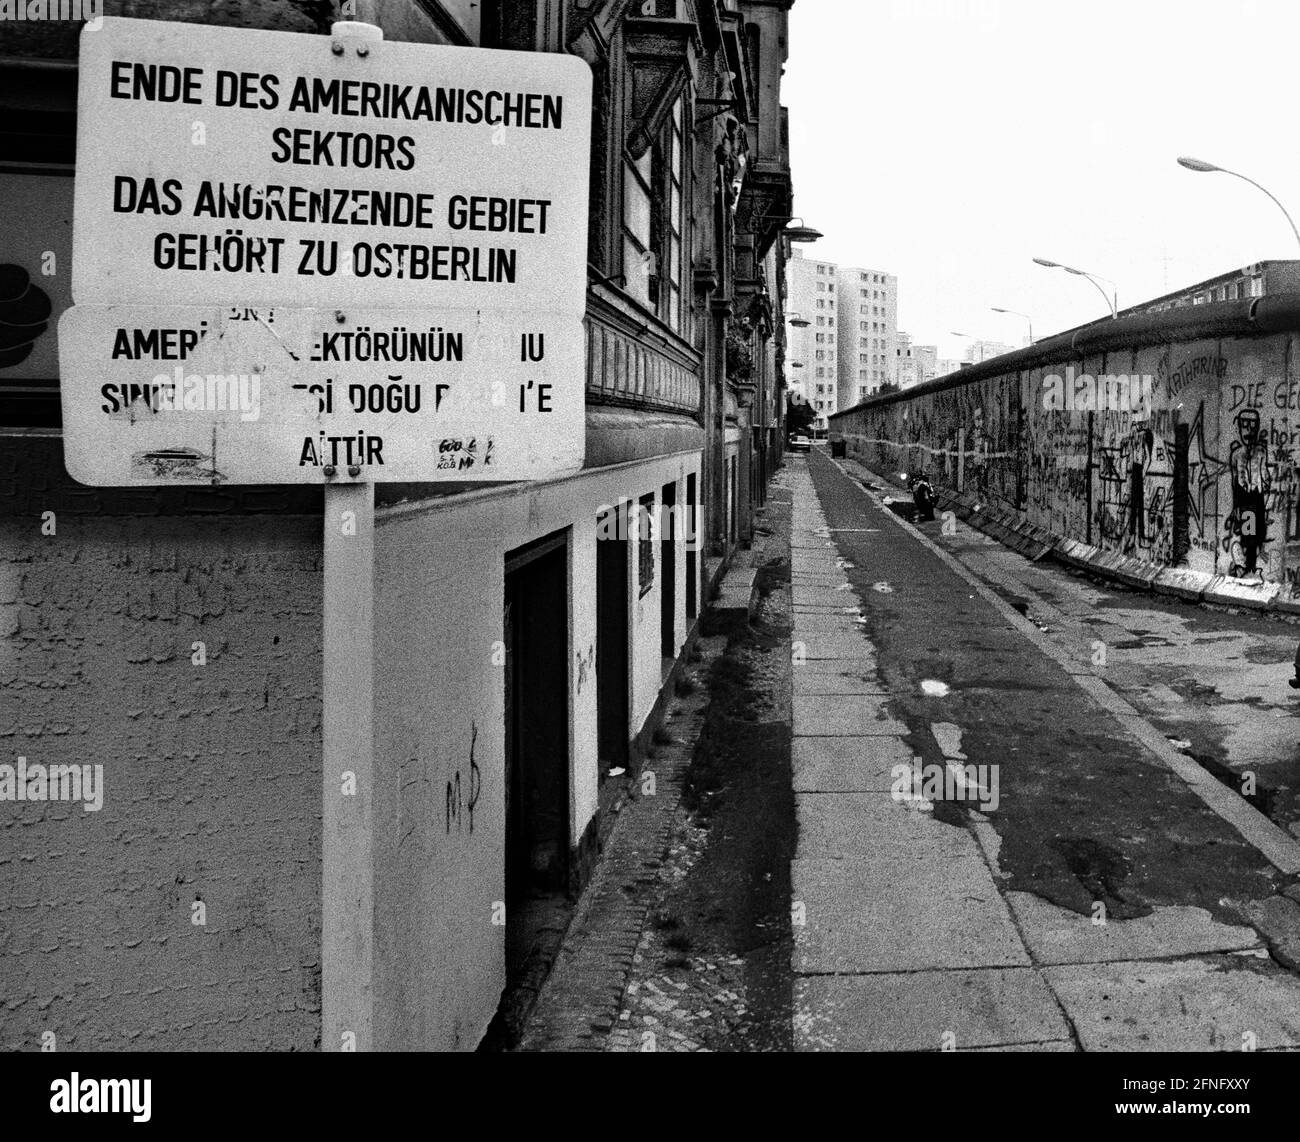 Berlino-Città / DDR / Kreuzberg / Muro / 1986 Kreuzberg: Luckauer Strasse, Sebastianstrasse. Berlino Est inizia dal muro della casa sulla sinistra, ma la RDT ha spostato il muro un po' indietro, in modo che i berlinesi occidentali potessero entrare nelle case. Sul lato destro dietro il muro si trova Berlino Est, quartiere Mitte. Segno: Fine del settore americano // Comunismo / distretti / Comunismo / Storia / Alleati [traduzione automatizzata] Foto Stock